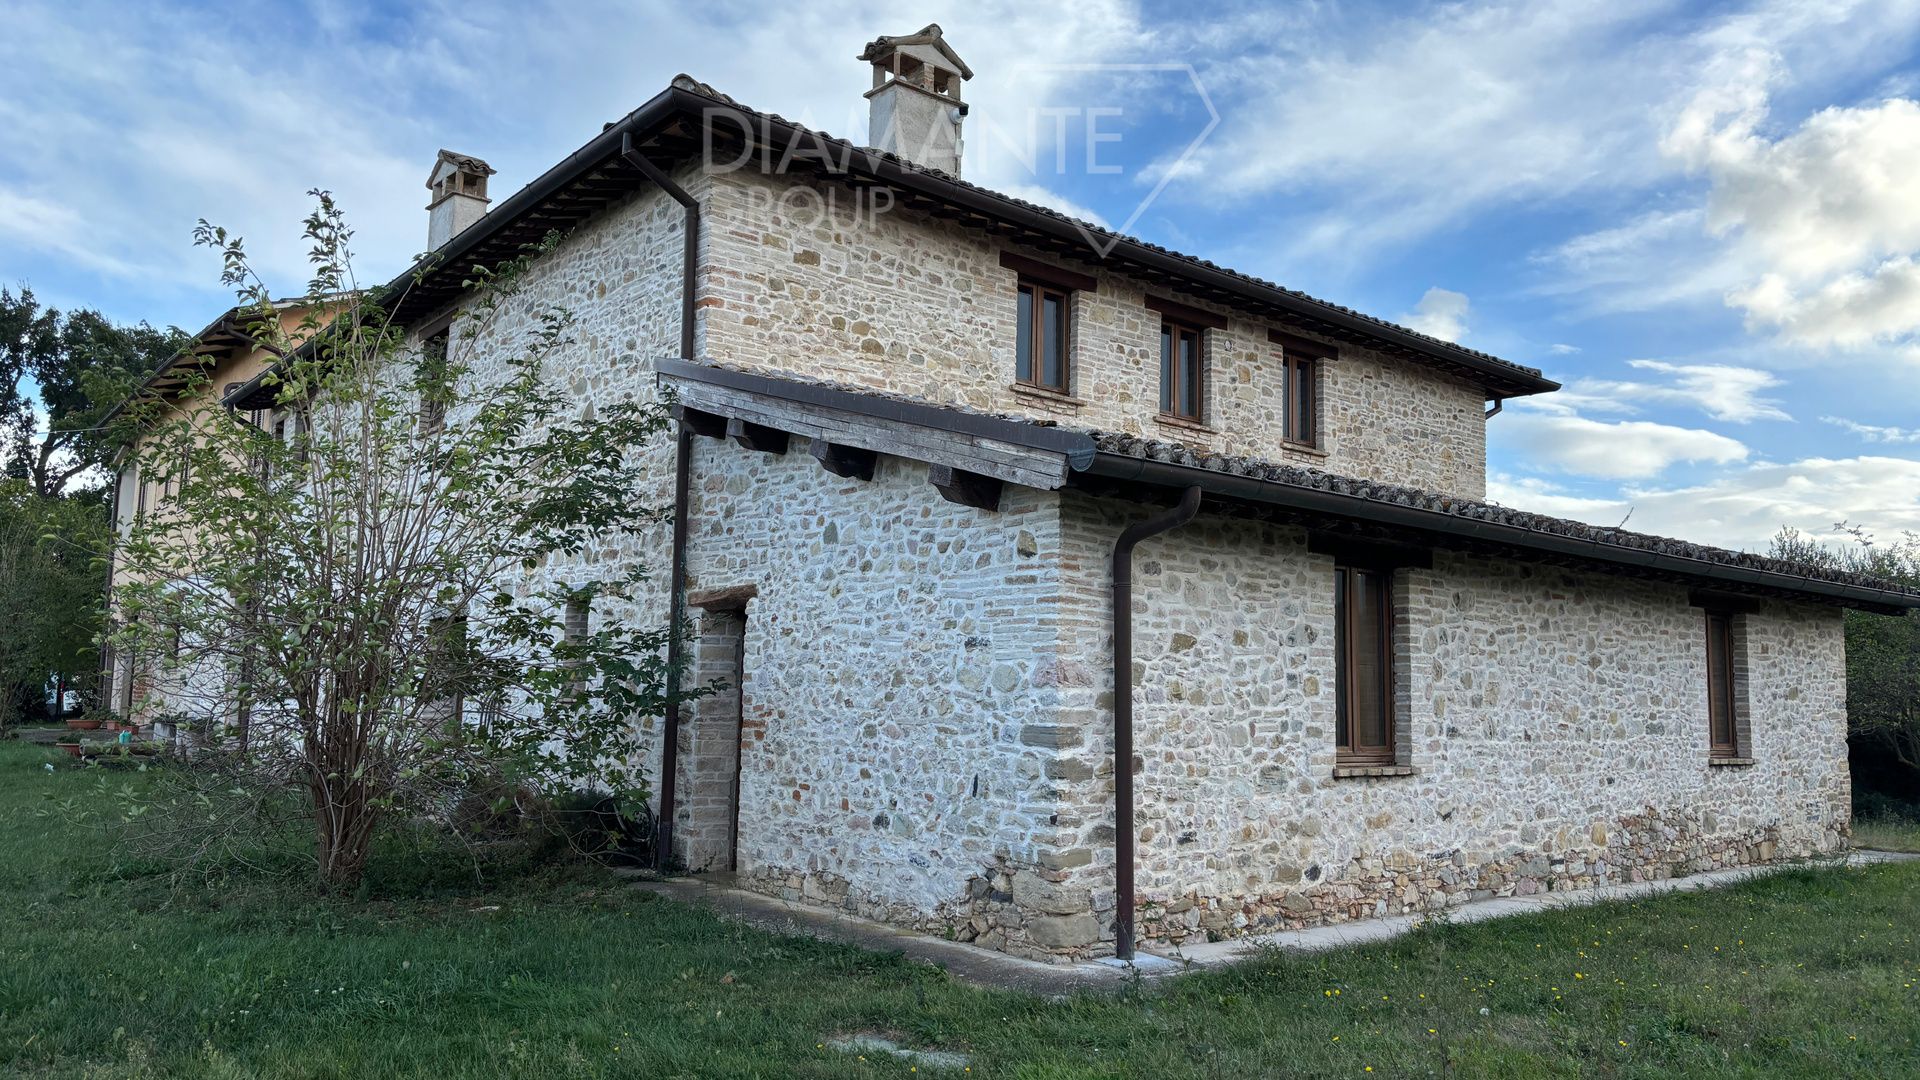 For sale cottage in quiet zone Castel Ritaldi Umbria